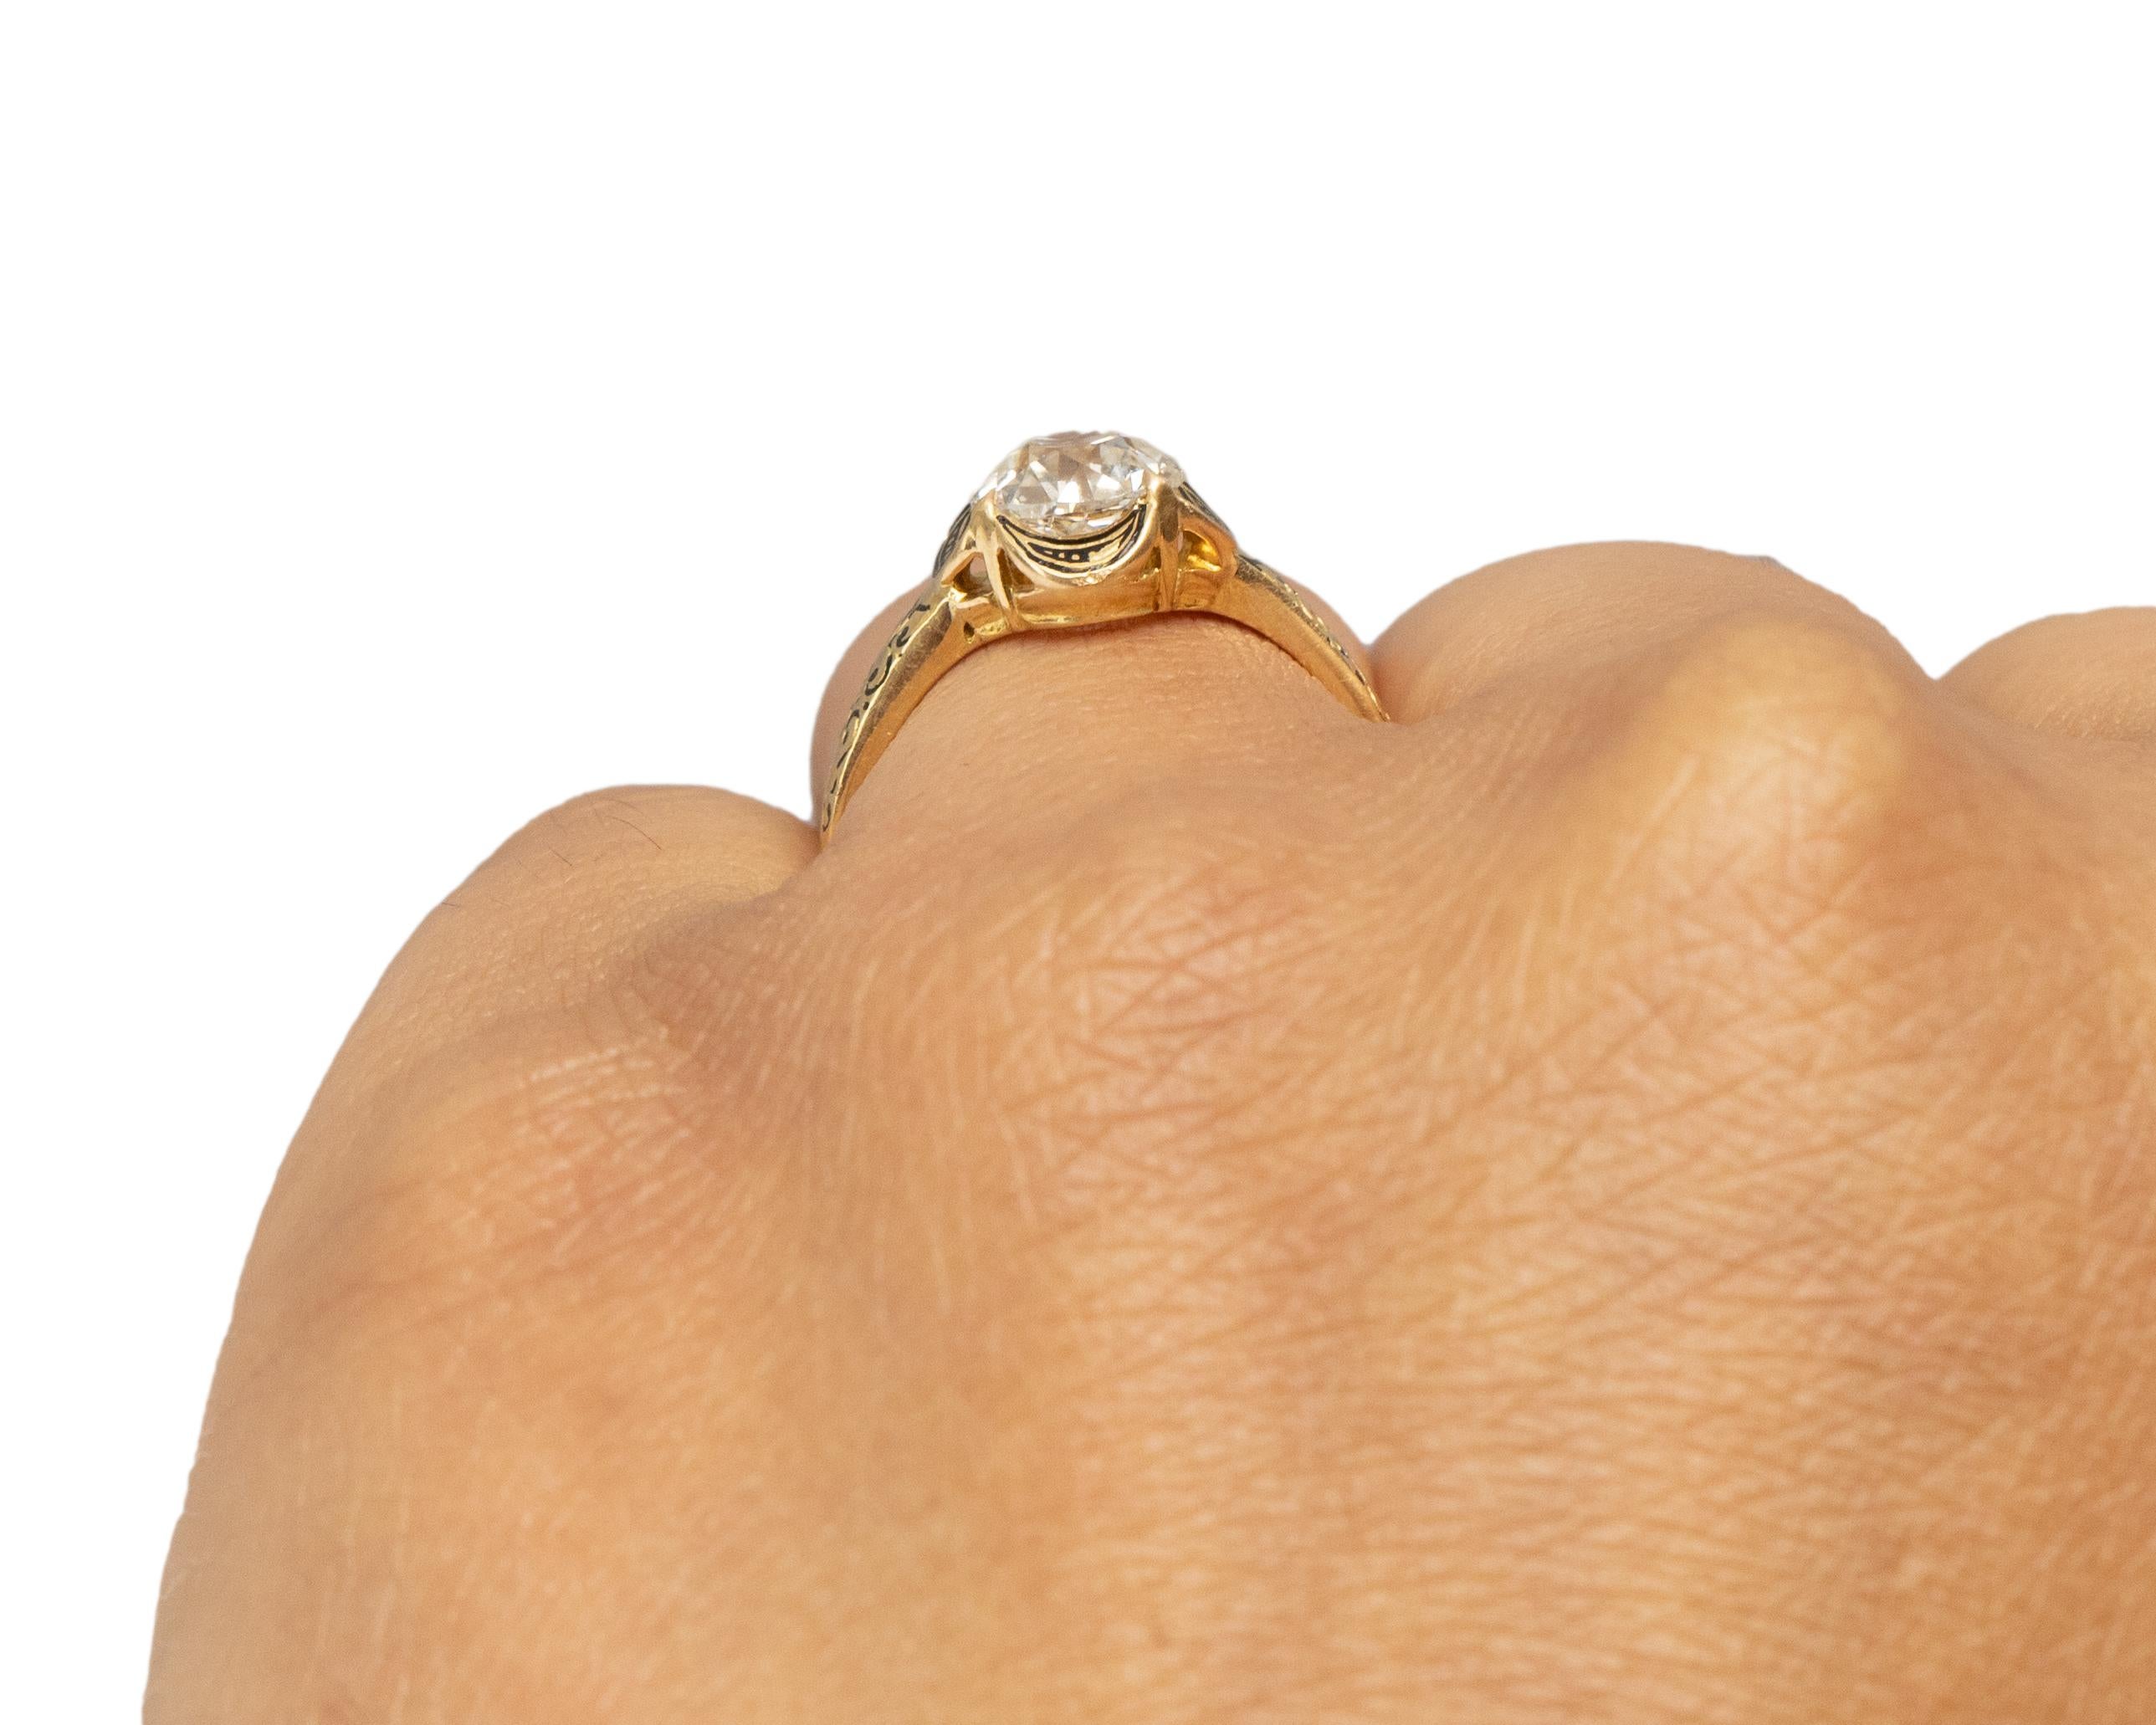 GIA Certified 1.37 Carat Edwardian Diamond 14 Karat Yellow Gold Engagement Ring For Sale 1